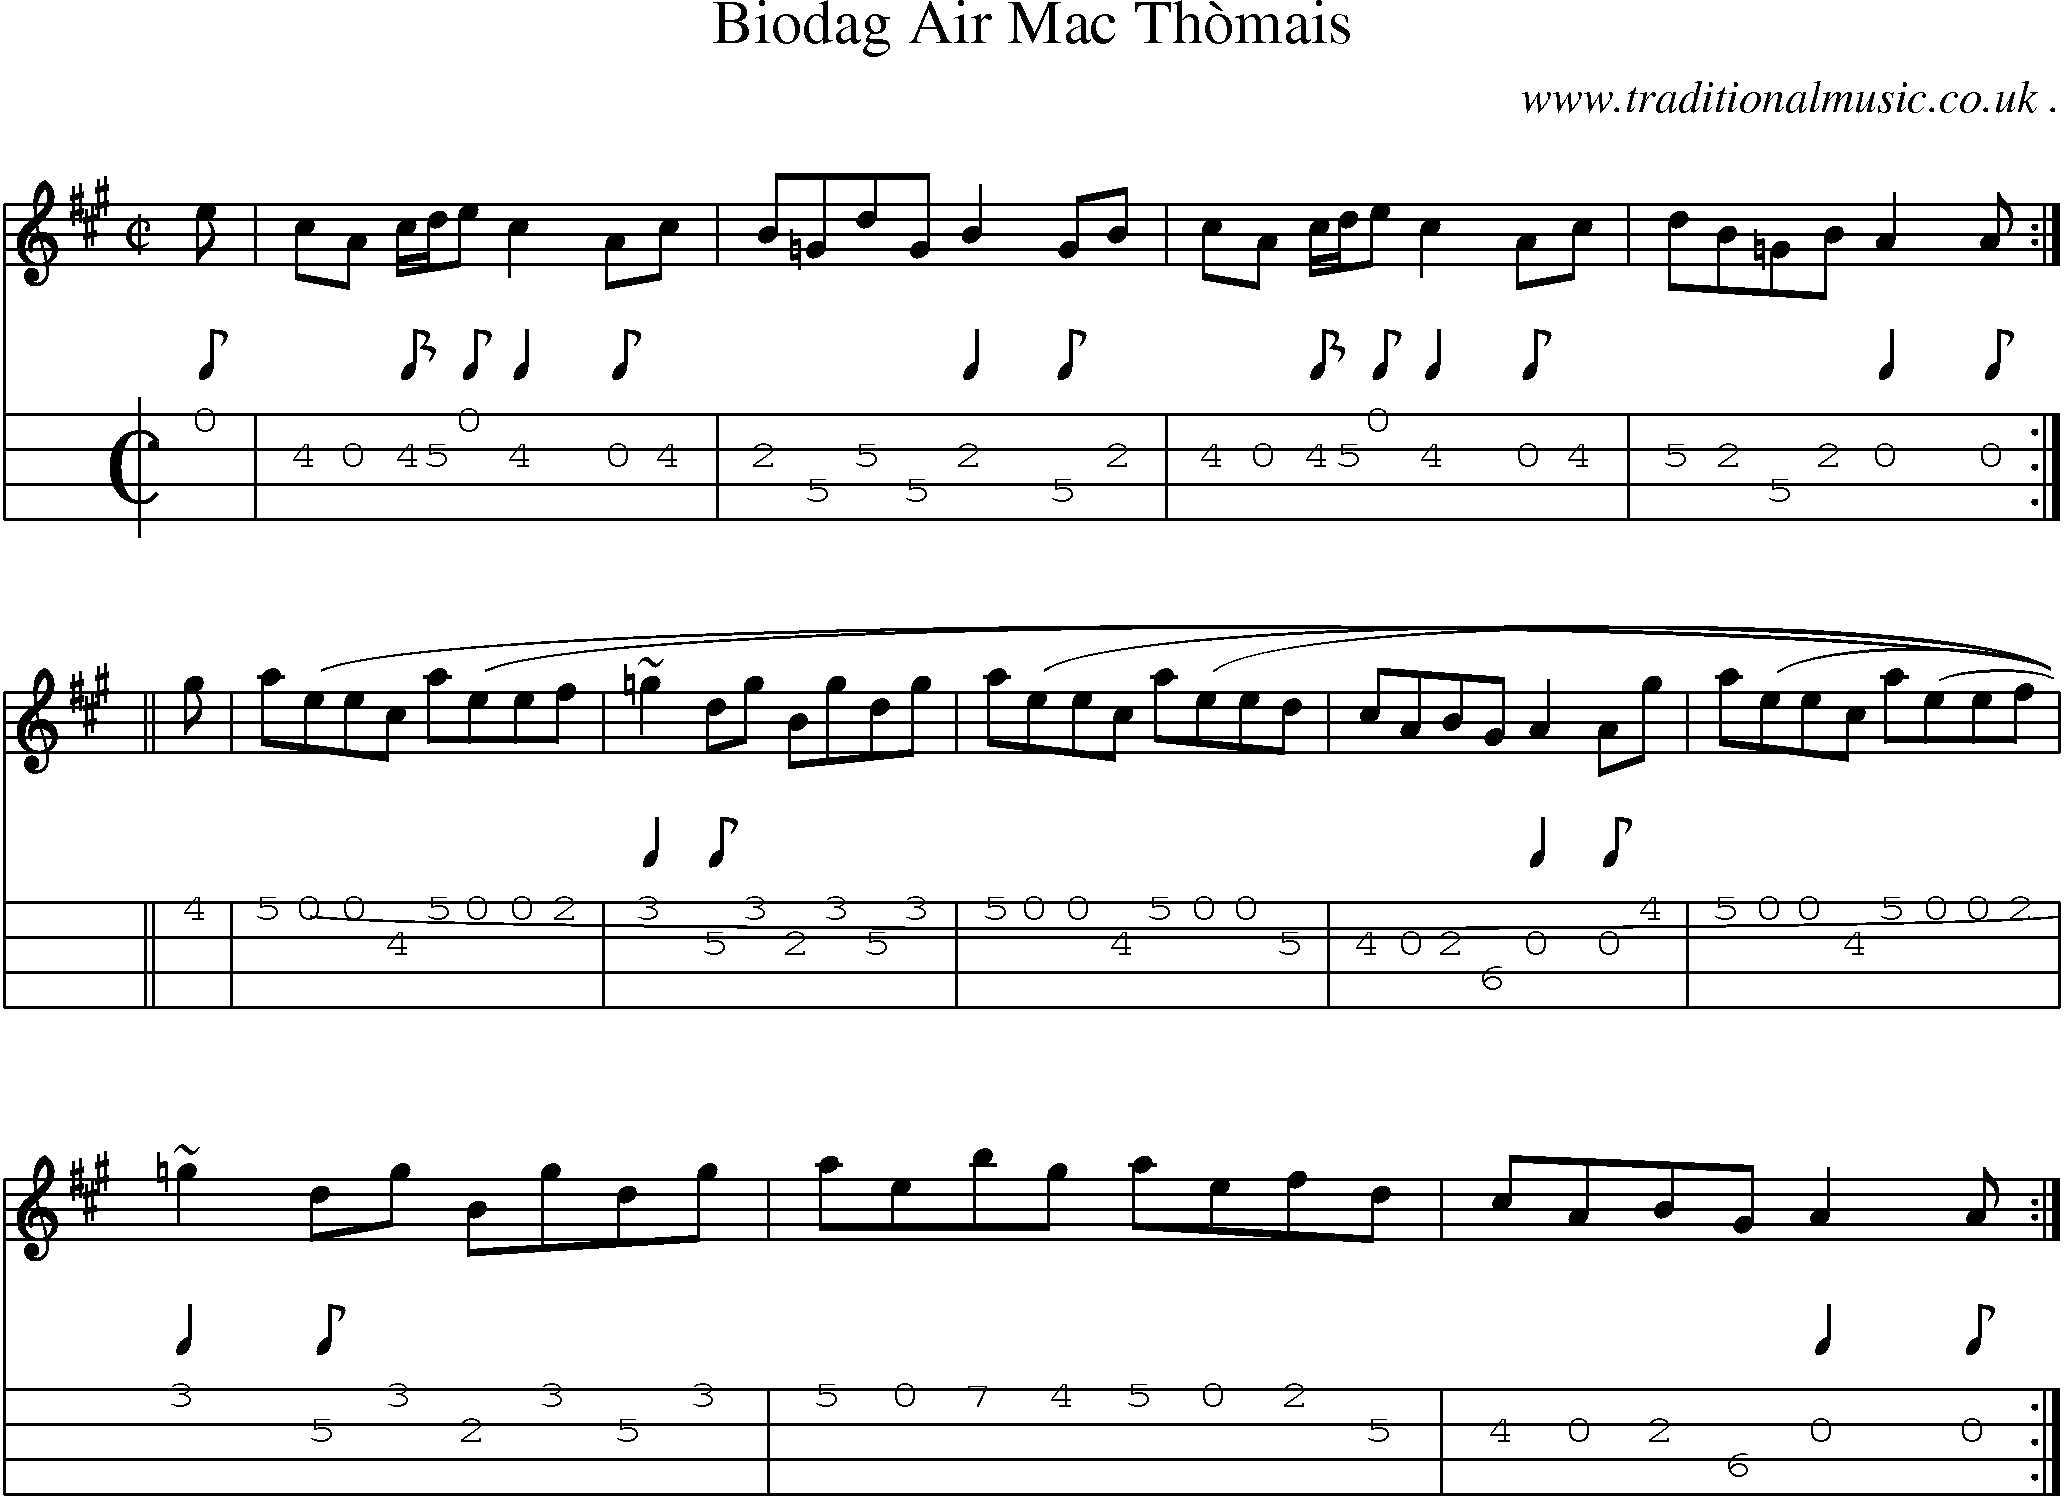 Sheet-music  score, Chords and Mandolin Tabs for Biodag Air Mac Thomais